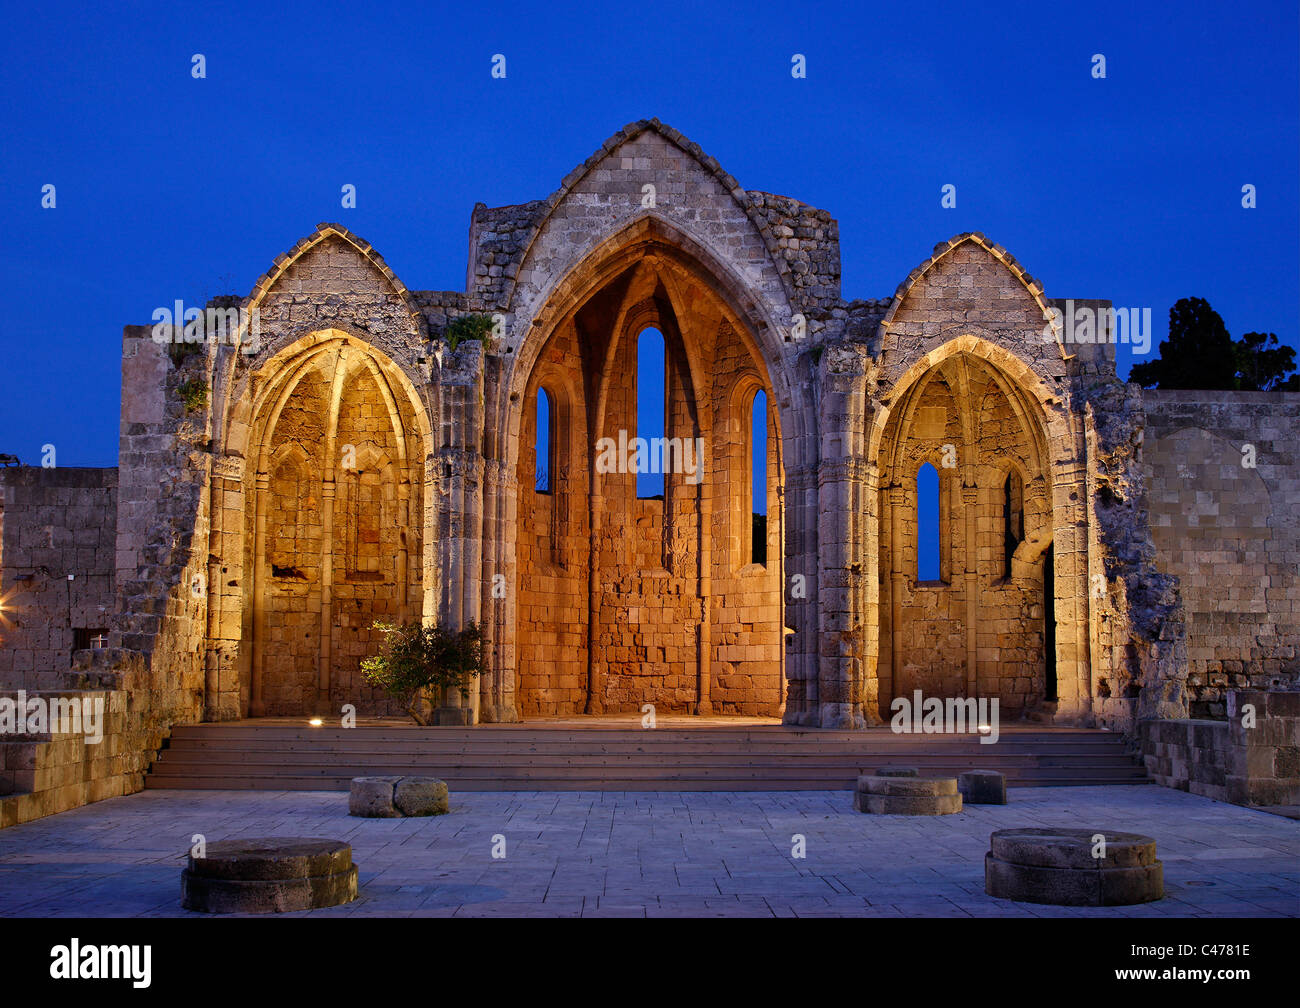 La demeure de 'Panagia tou Bourgou' ('Notre Dame de l' église Burgh) dans la ville médiévale de Rhodes island, Grèce Banque D'Images